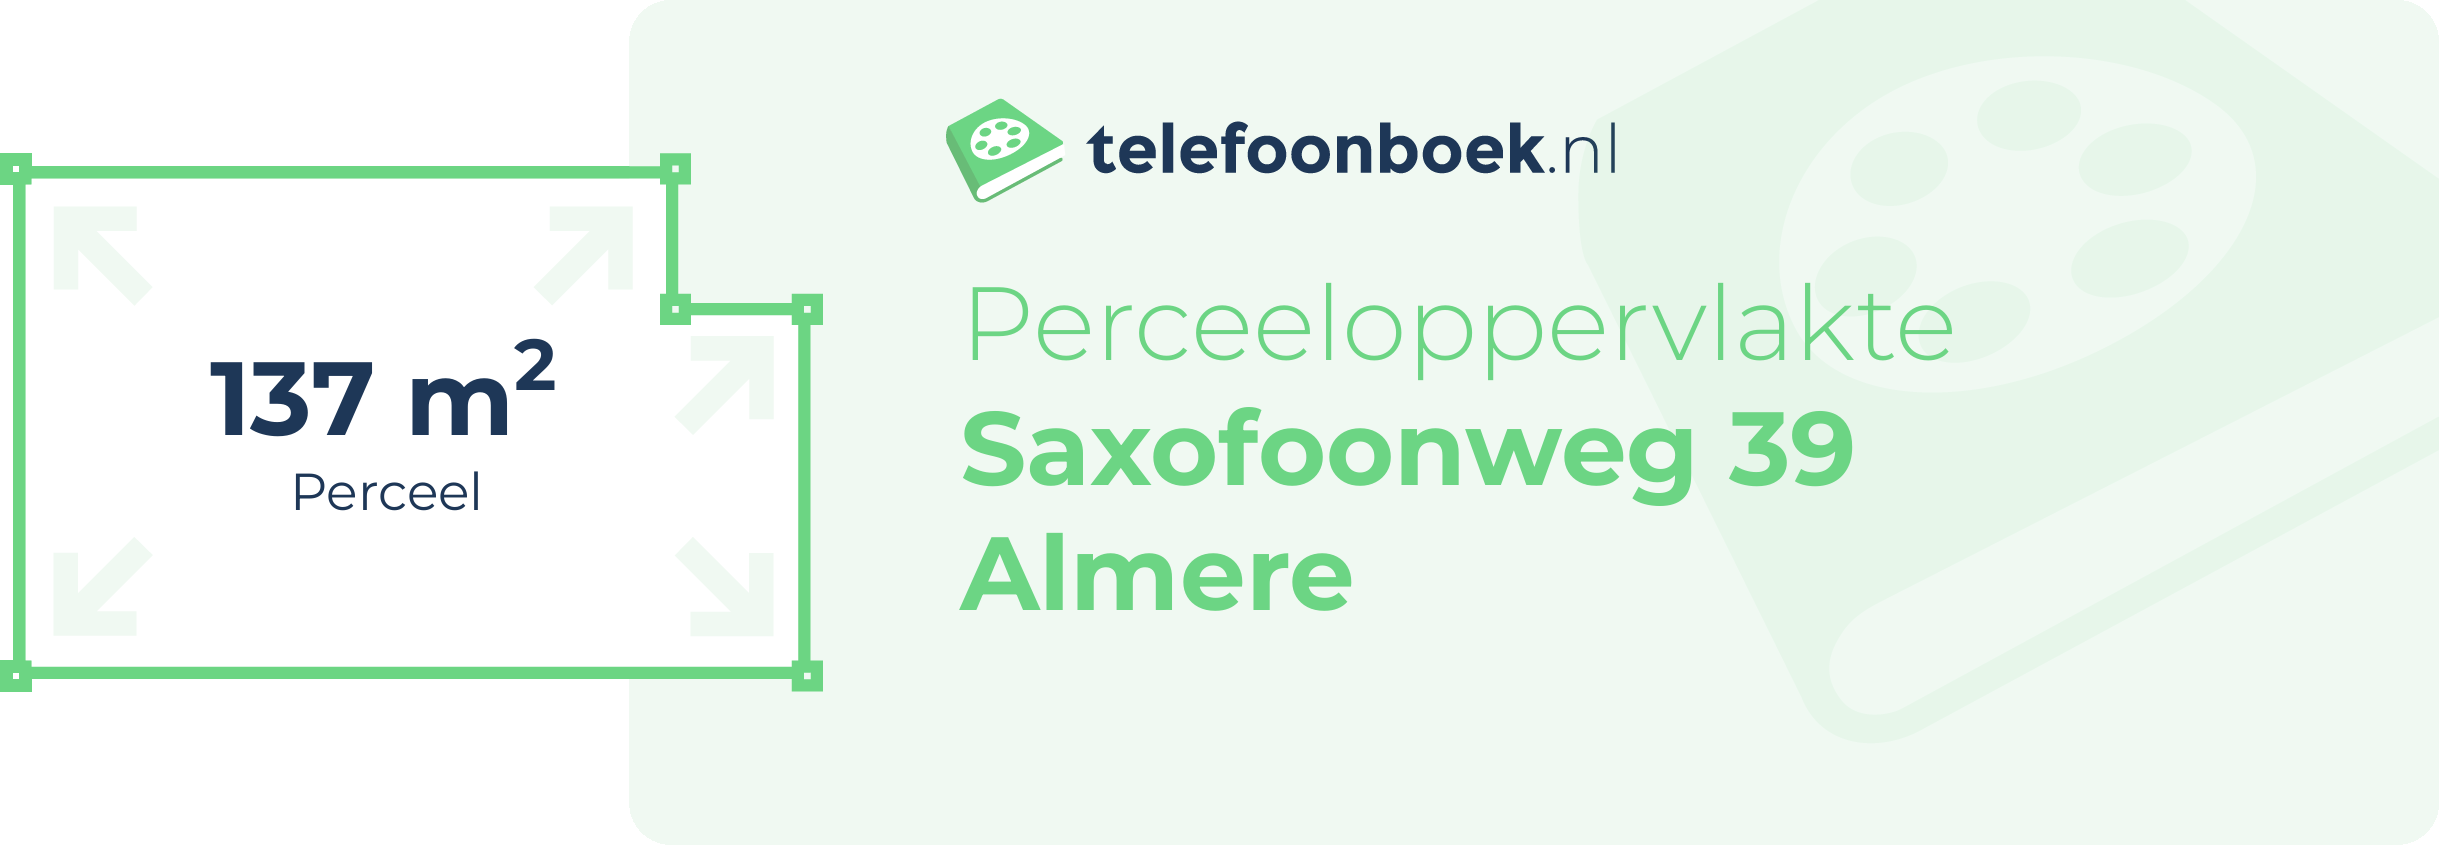 Perceeloppervlakte Saxofoonweg 39 Almere